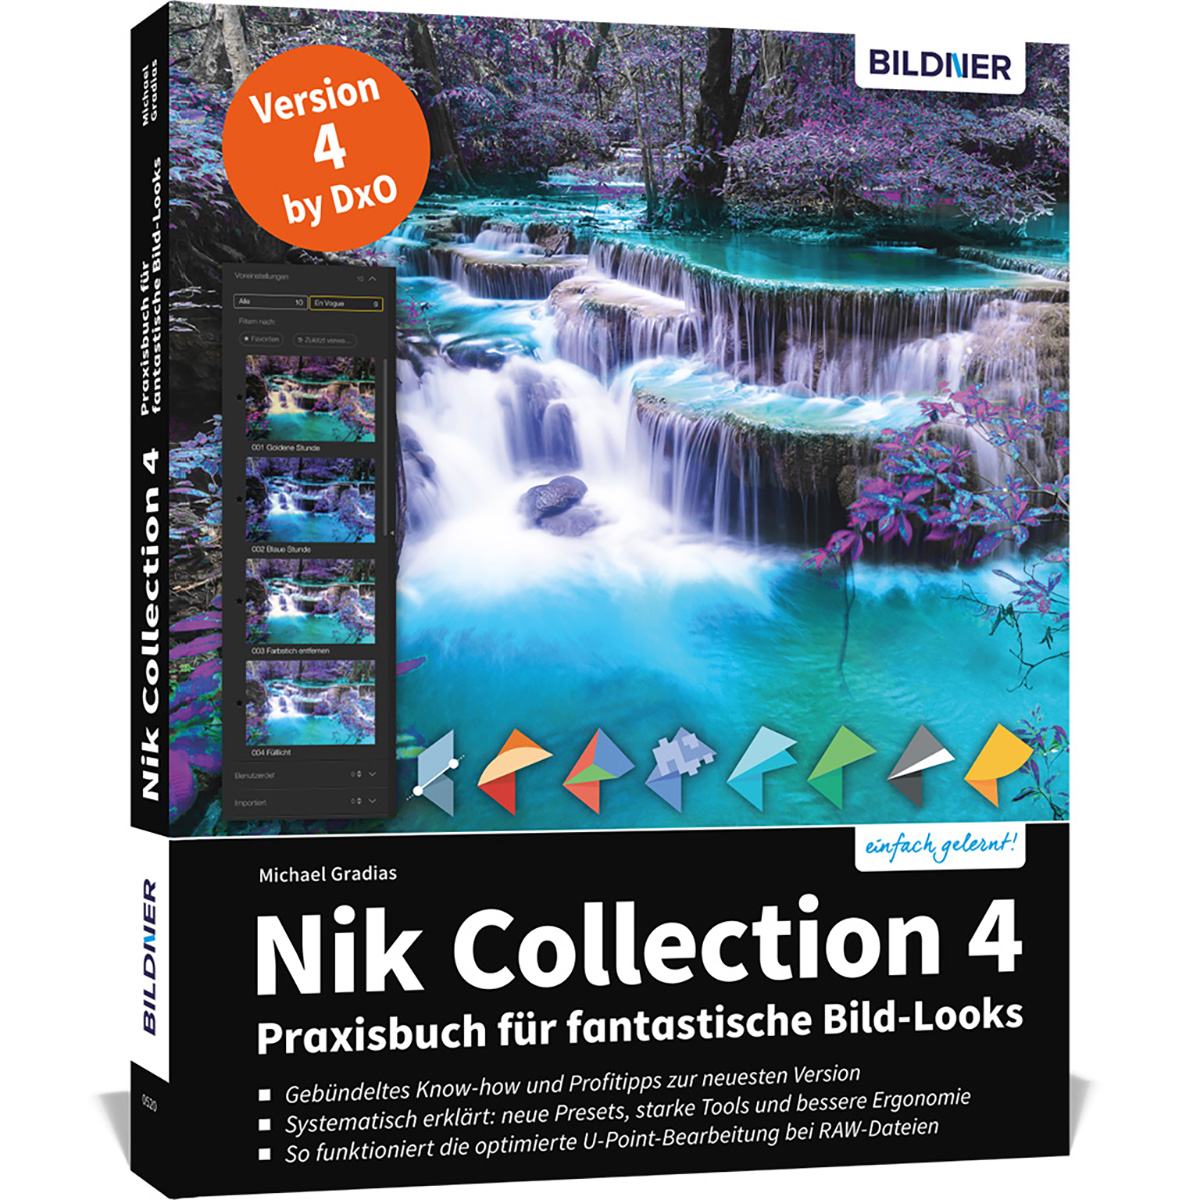 Nik Collection 4 - für Bild-Looks fantastische Praxisbuch